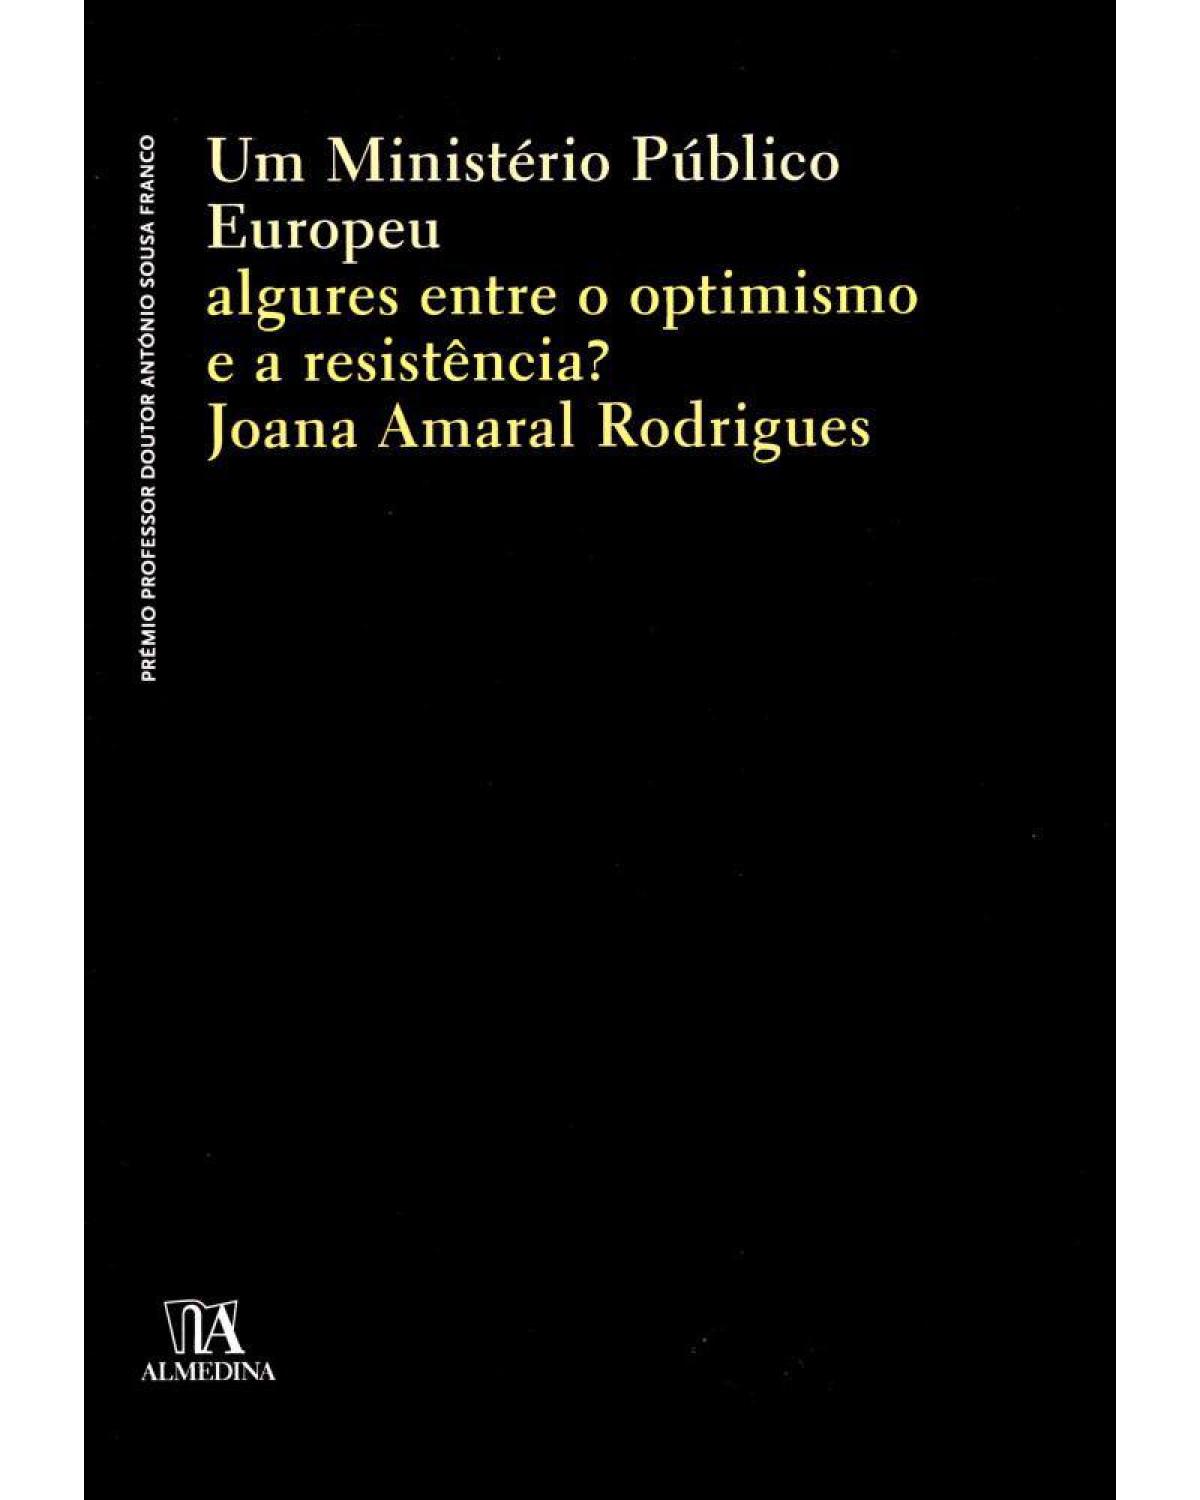 Um ministério público europeu - algures entre o optimismo e a resistência? - 1ª Edição | 2012